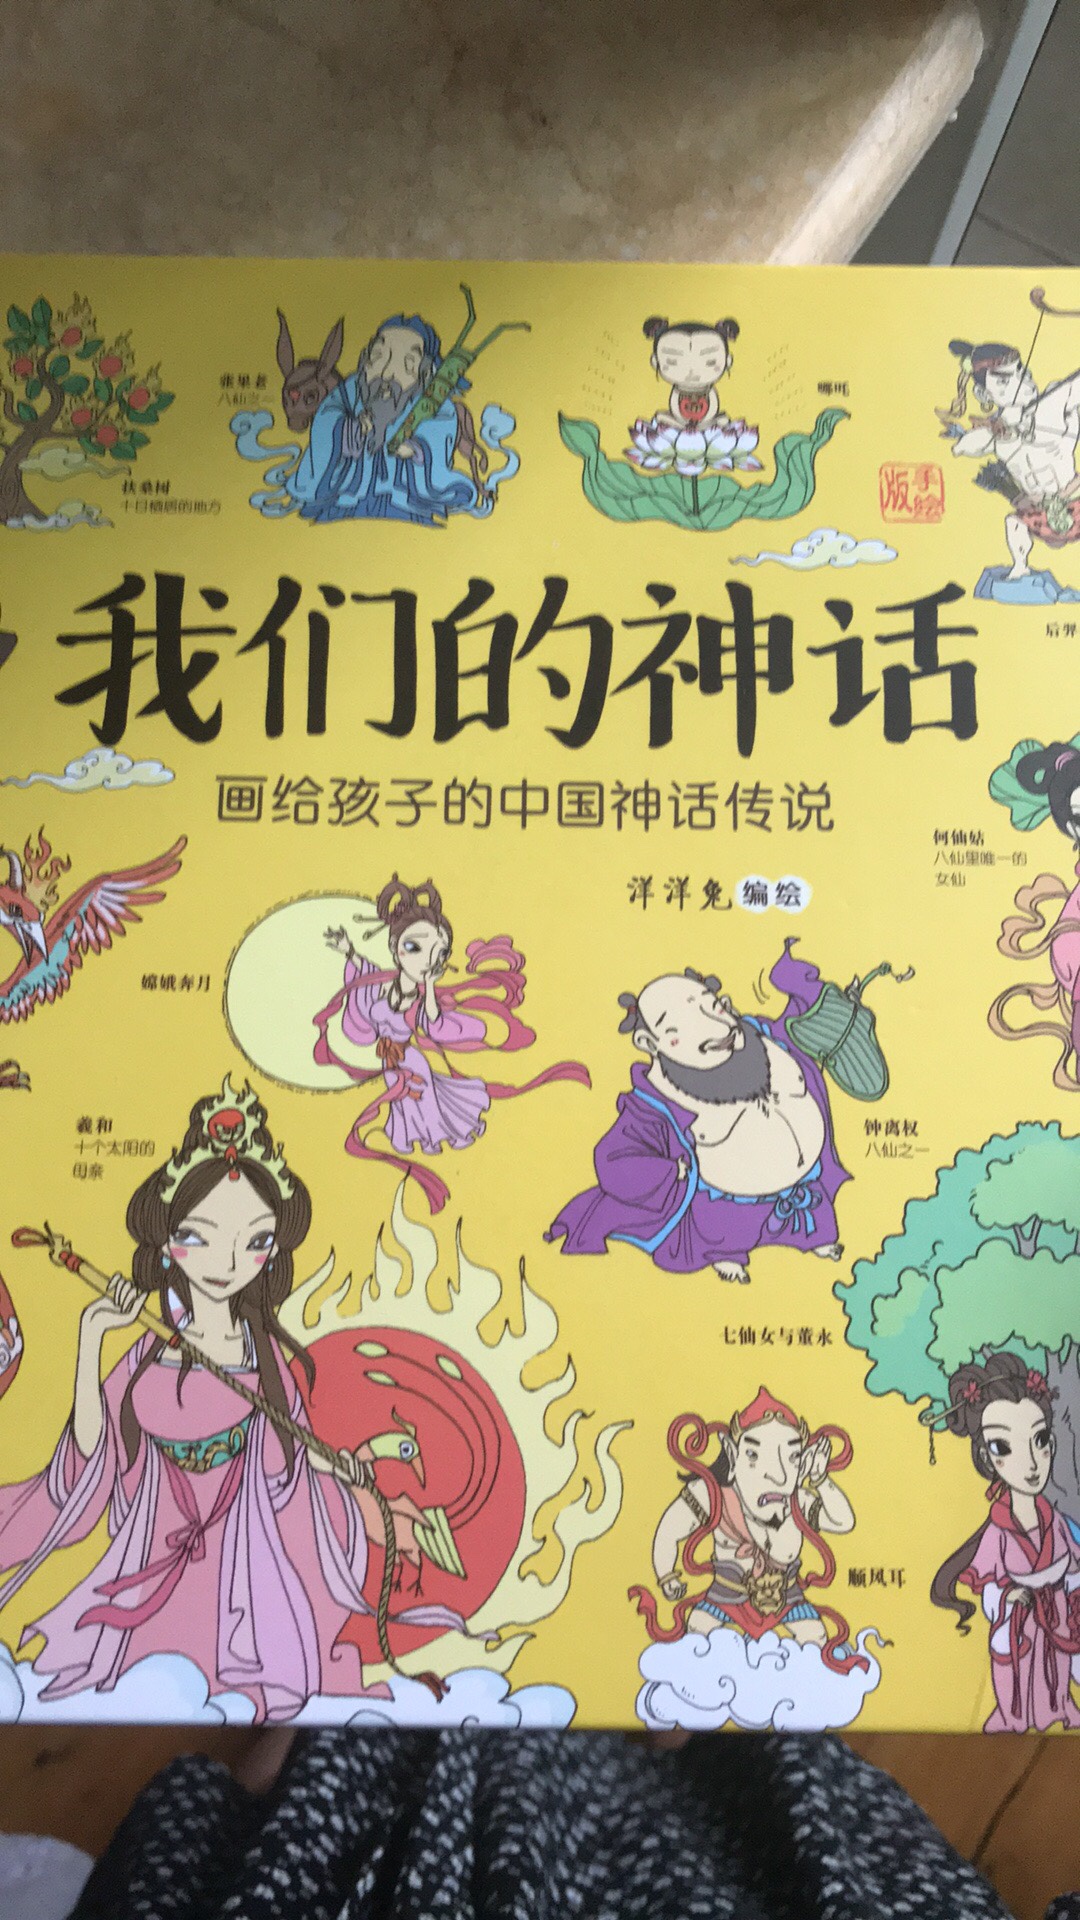 比较系统的神话故事，中国传统大部分的神话形象都可以在这本书找到